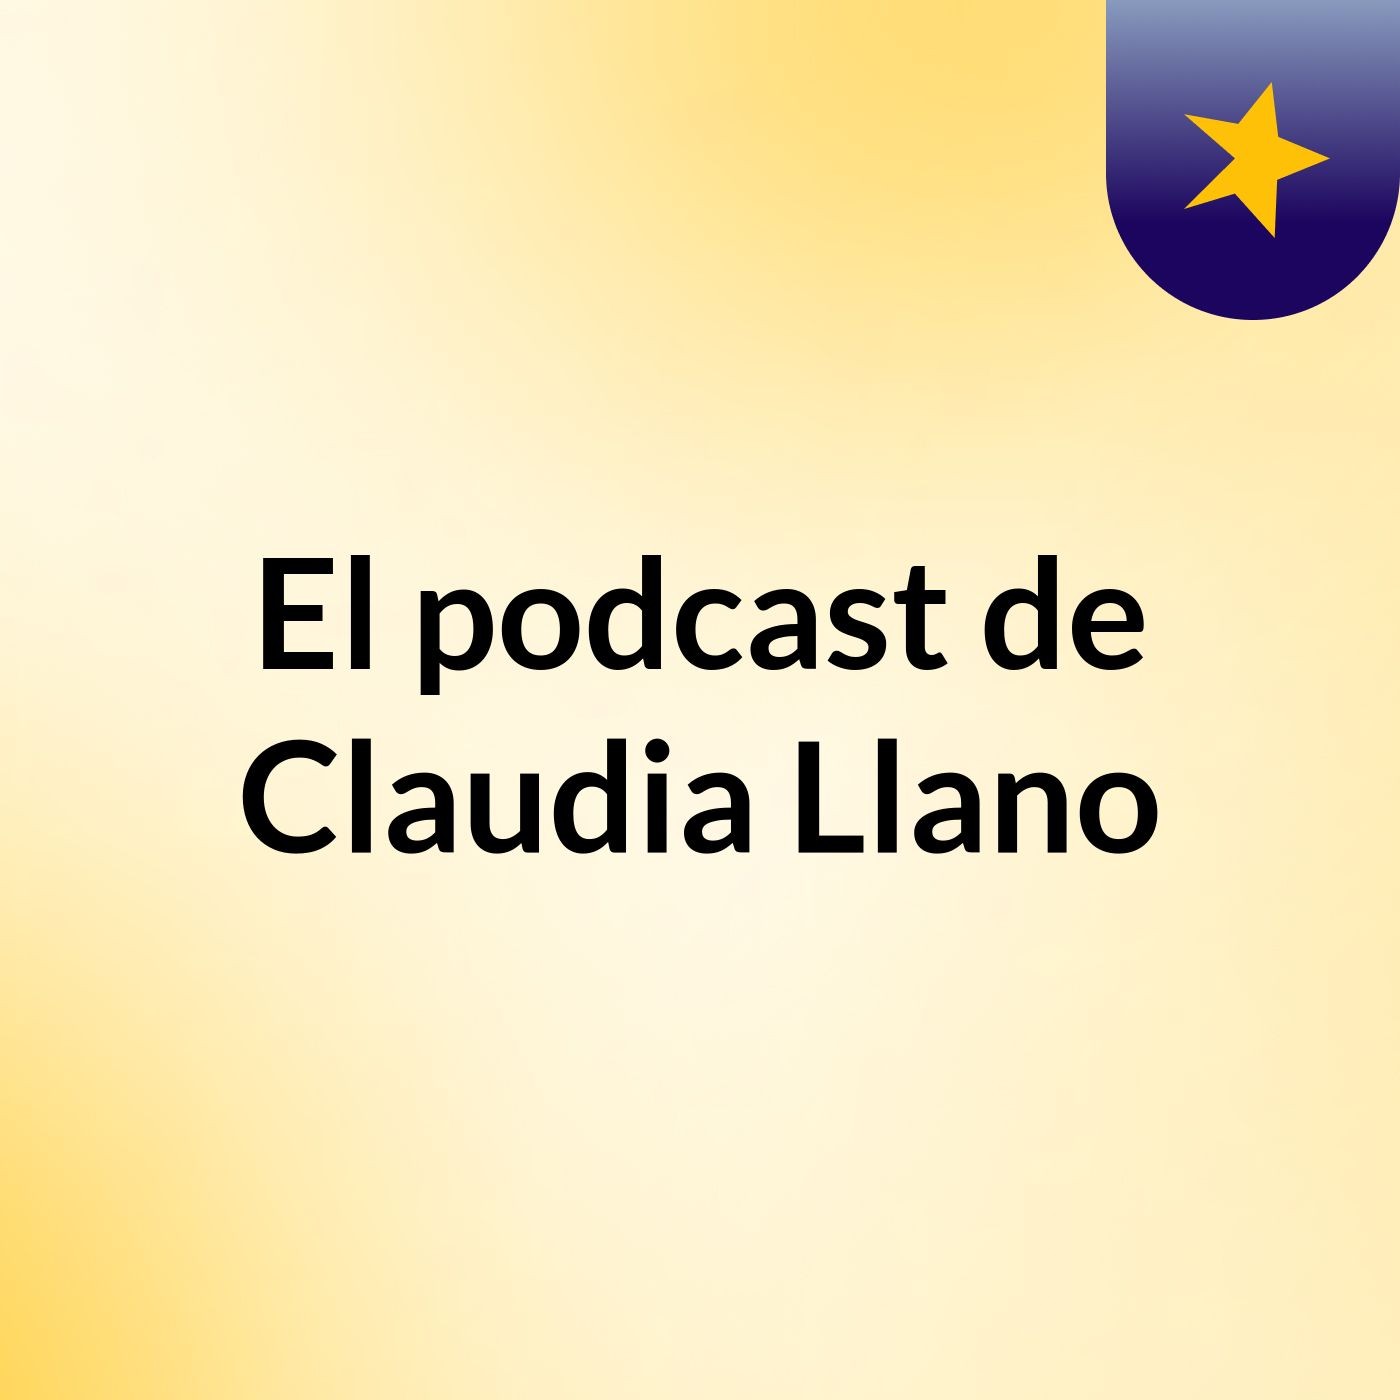 El podcast de Claudia Llano